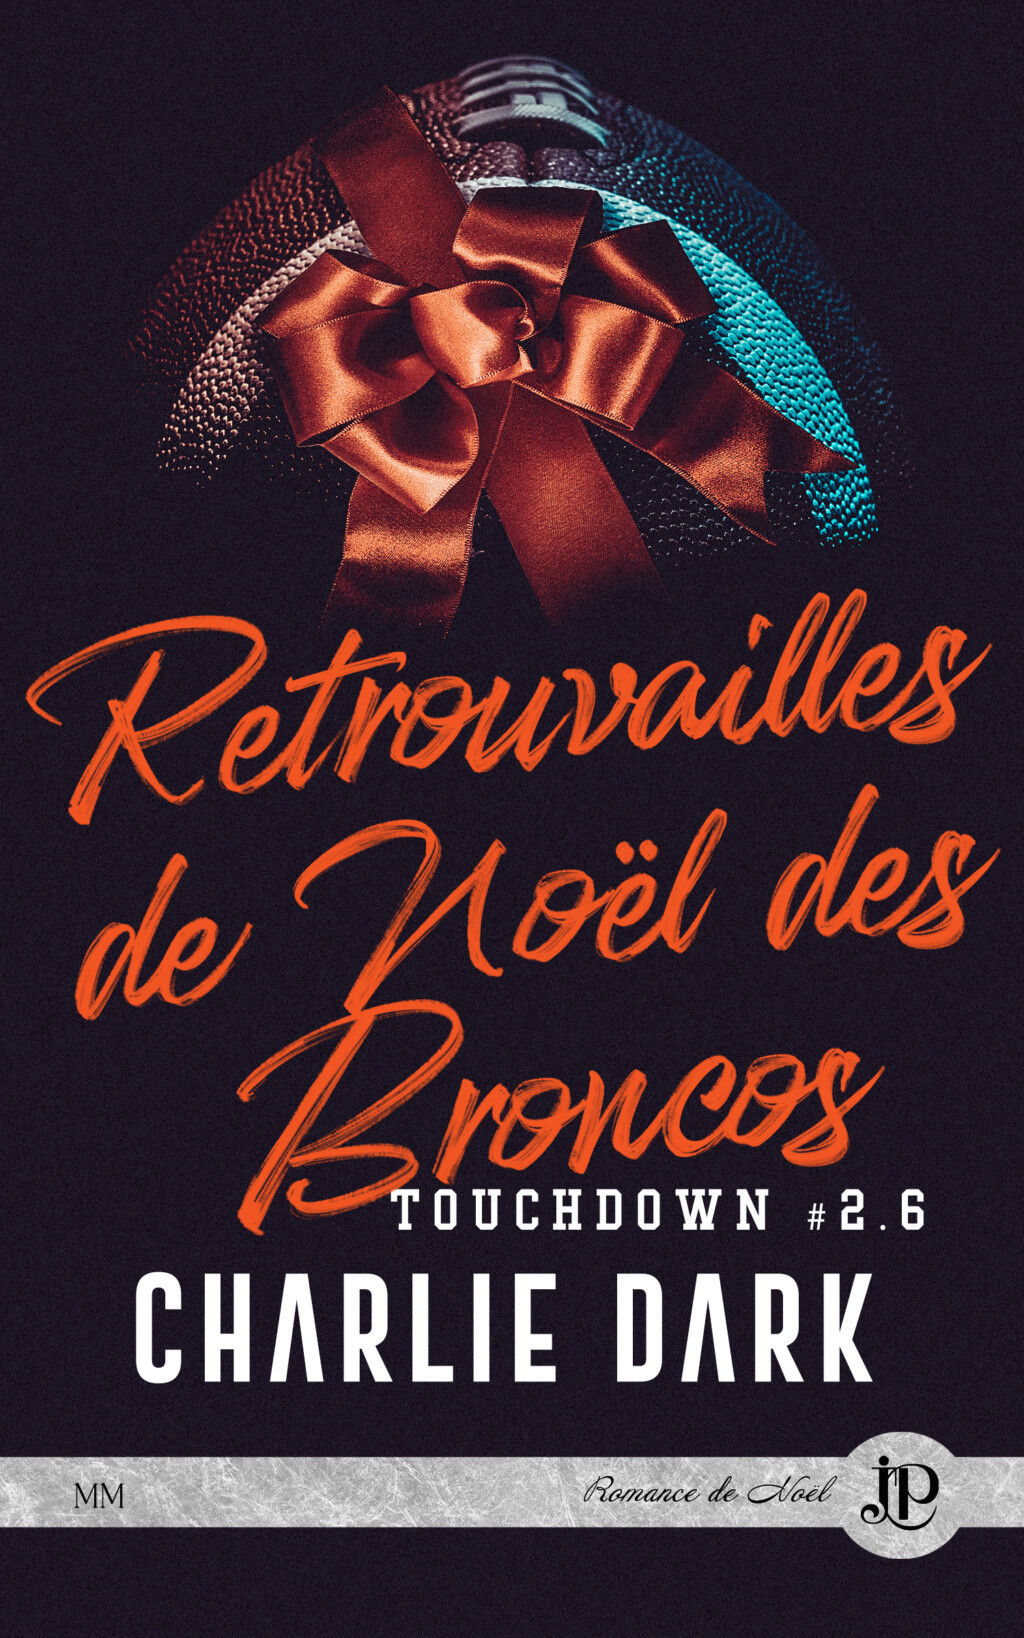 Touchdown - Tome 2,6 : Retrouvailles de Noël des Broncos de Charlie Dark F4d11a10